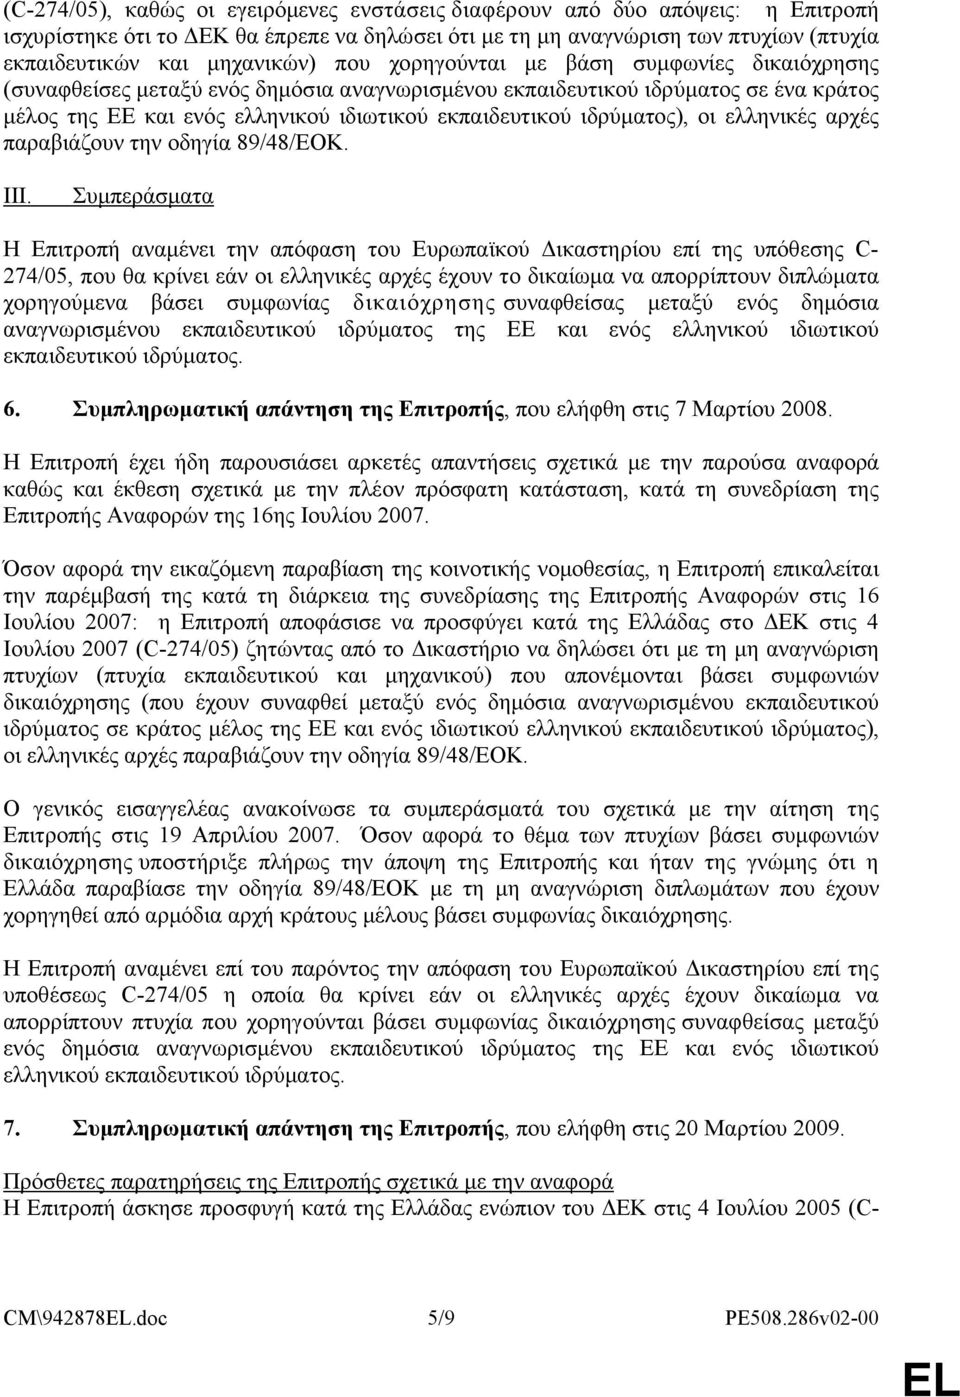 ιδρύματος), οι ελληνικές αρχές παραβιάζουν την οδηγία 89/48/ΕΟΚ. III.